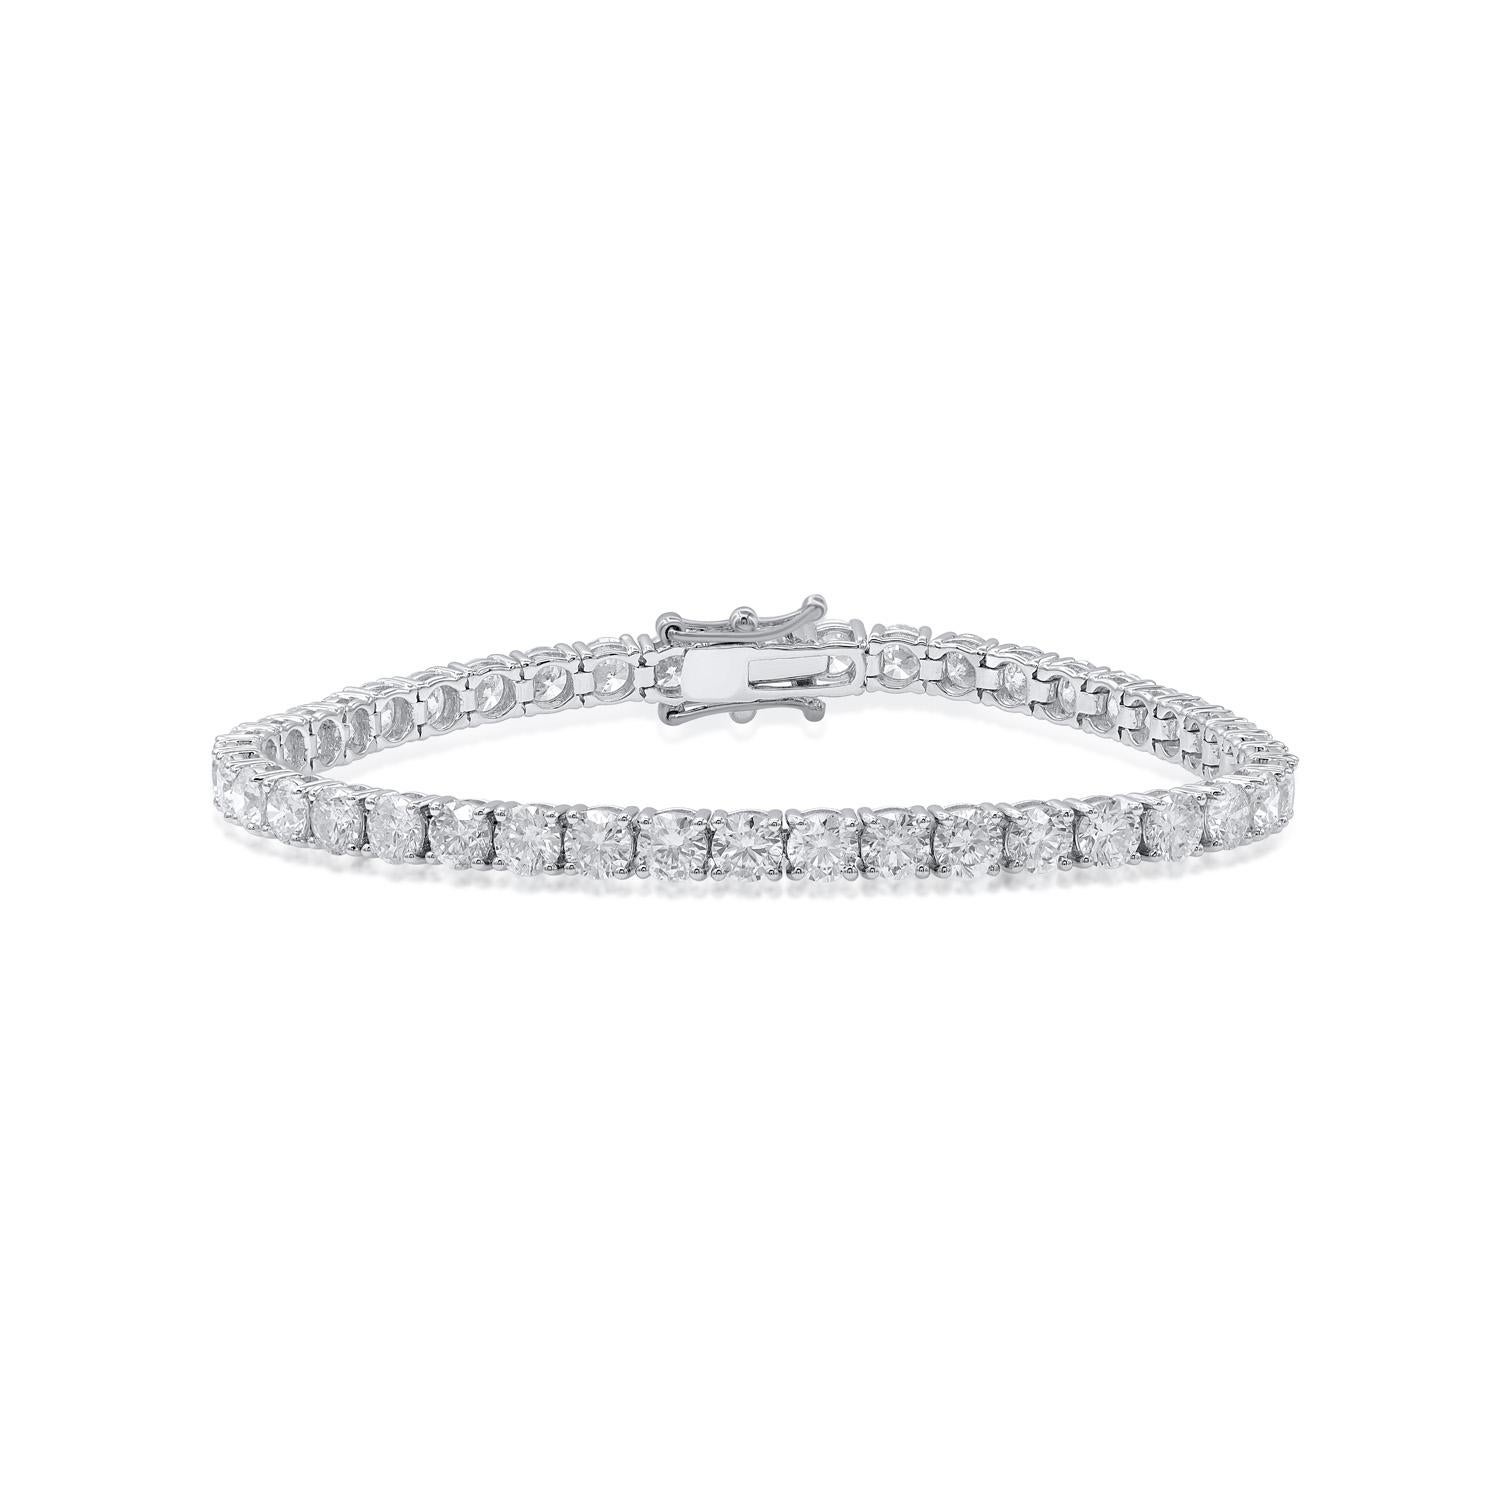 Réalisé en or blanc 18 KT, ce bracelet brille de tous ses feux grâce à 43 diamants ronds sertis en griffe. Détails du diamant : couleur H-I, pureté I1-I2.  Ce bracelet classique s'accorde parfaitement avec tous vos styles. 